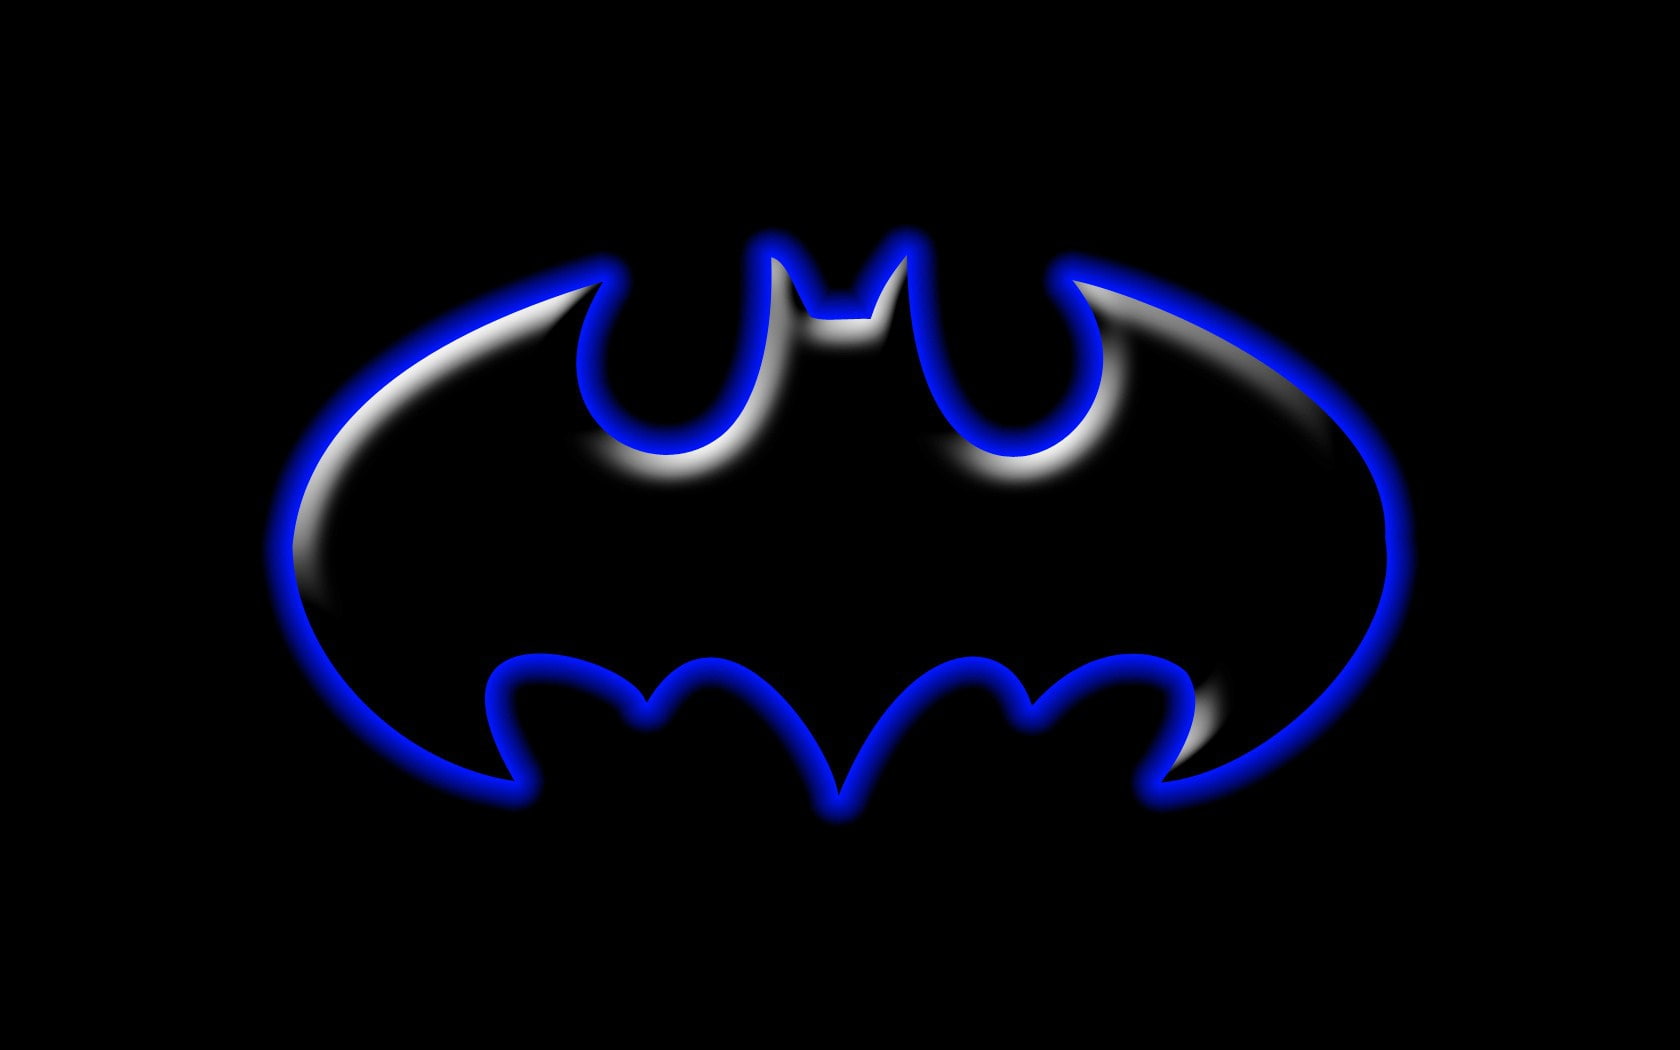 3D ABSTRACT BATMAN LOGO (BLUE) Abstract 3D and CG HD Art, BATMAN SYMBOL